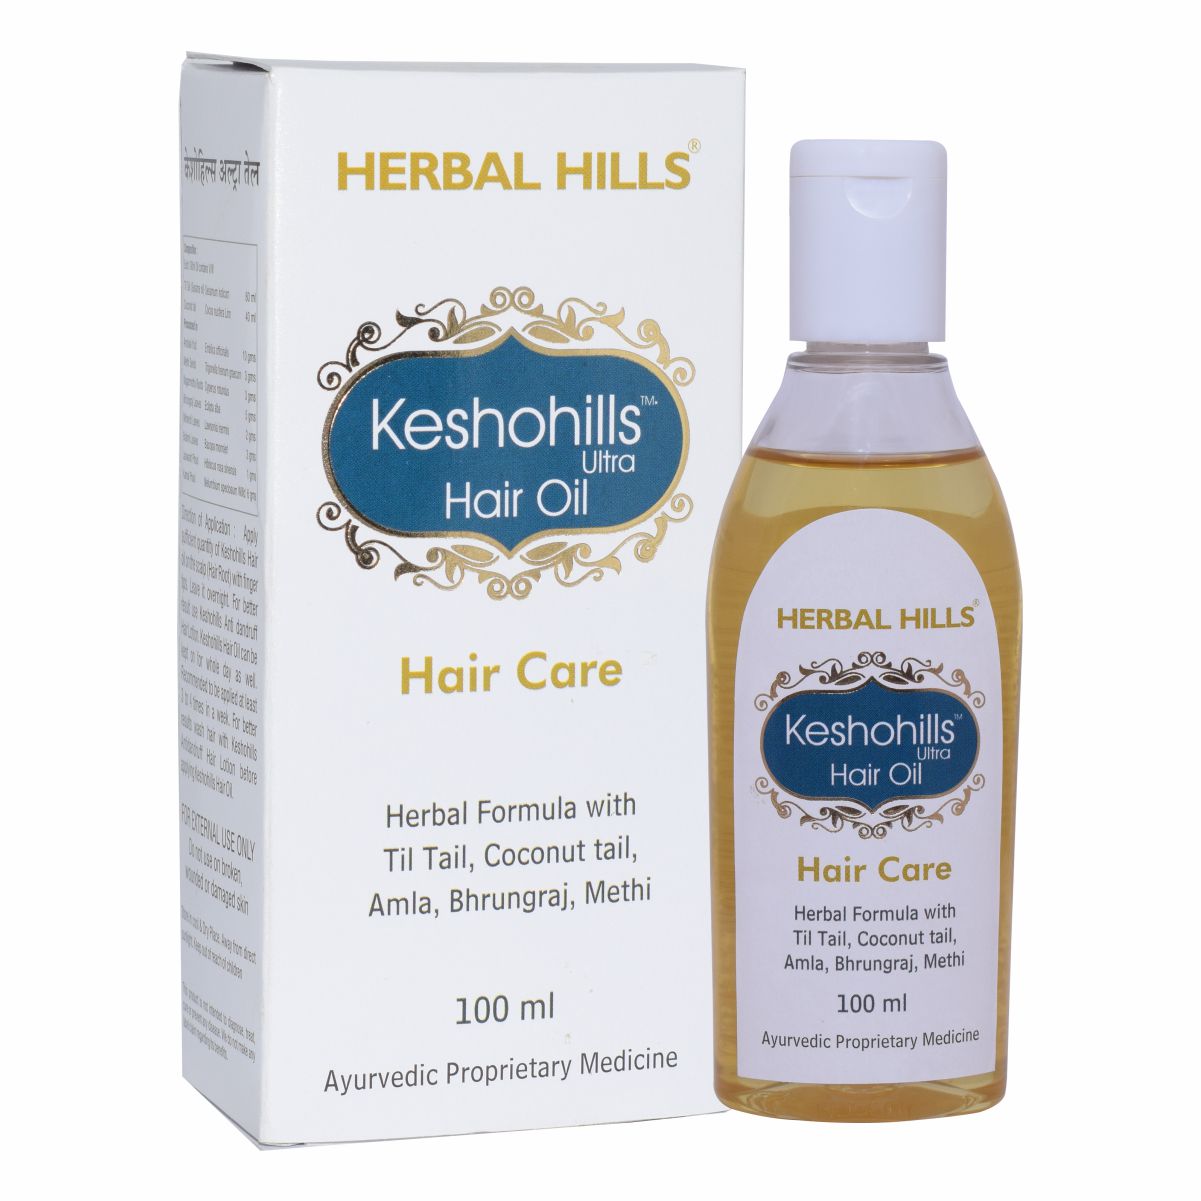 Buy Herbal Hills Keshohills Hair Oil at Best Price Online